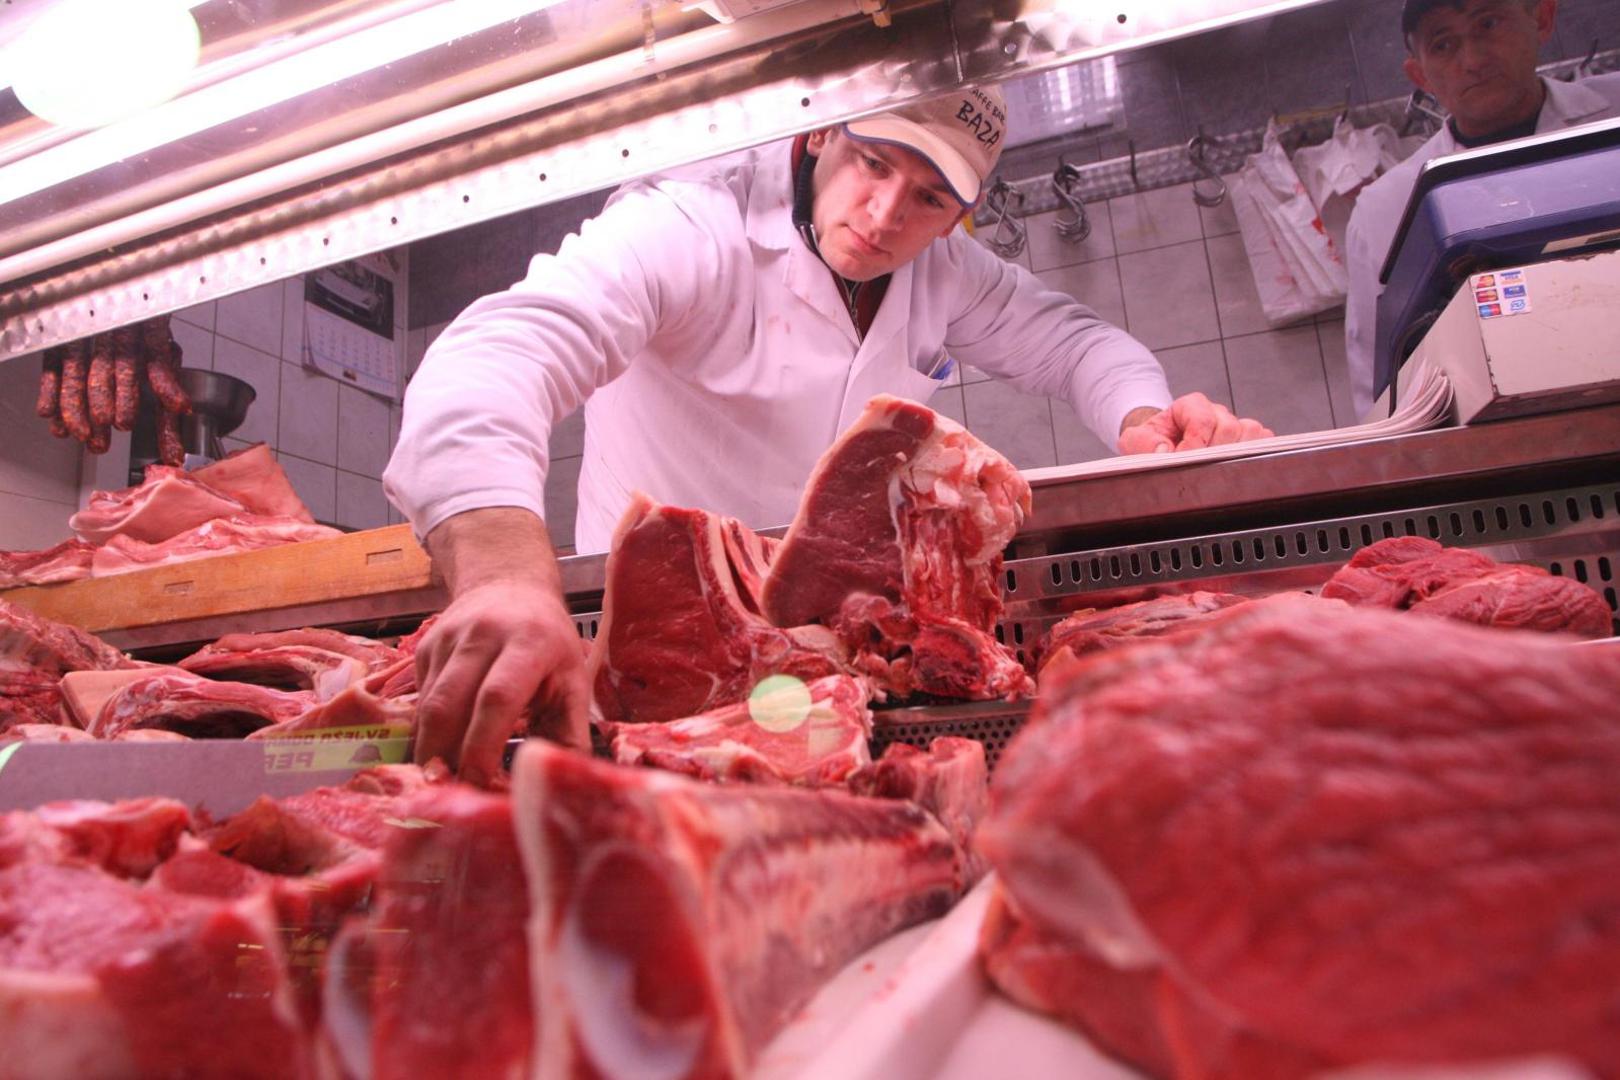 Sve vrste mesa uvozimo jer ne proizvodimo dovoljno. Uvozimo iz cijelog
EU, od Litve do Poljske, Danske i Nizozemske...